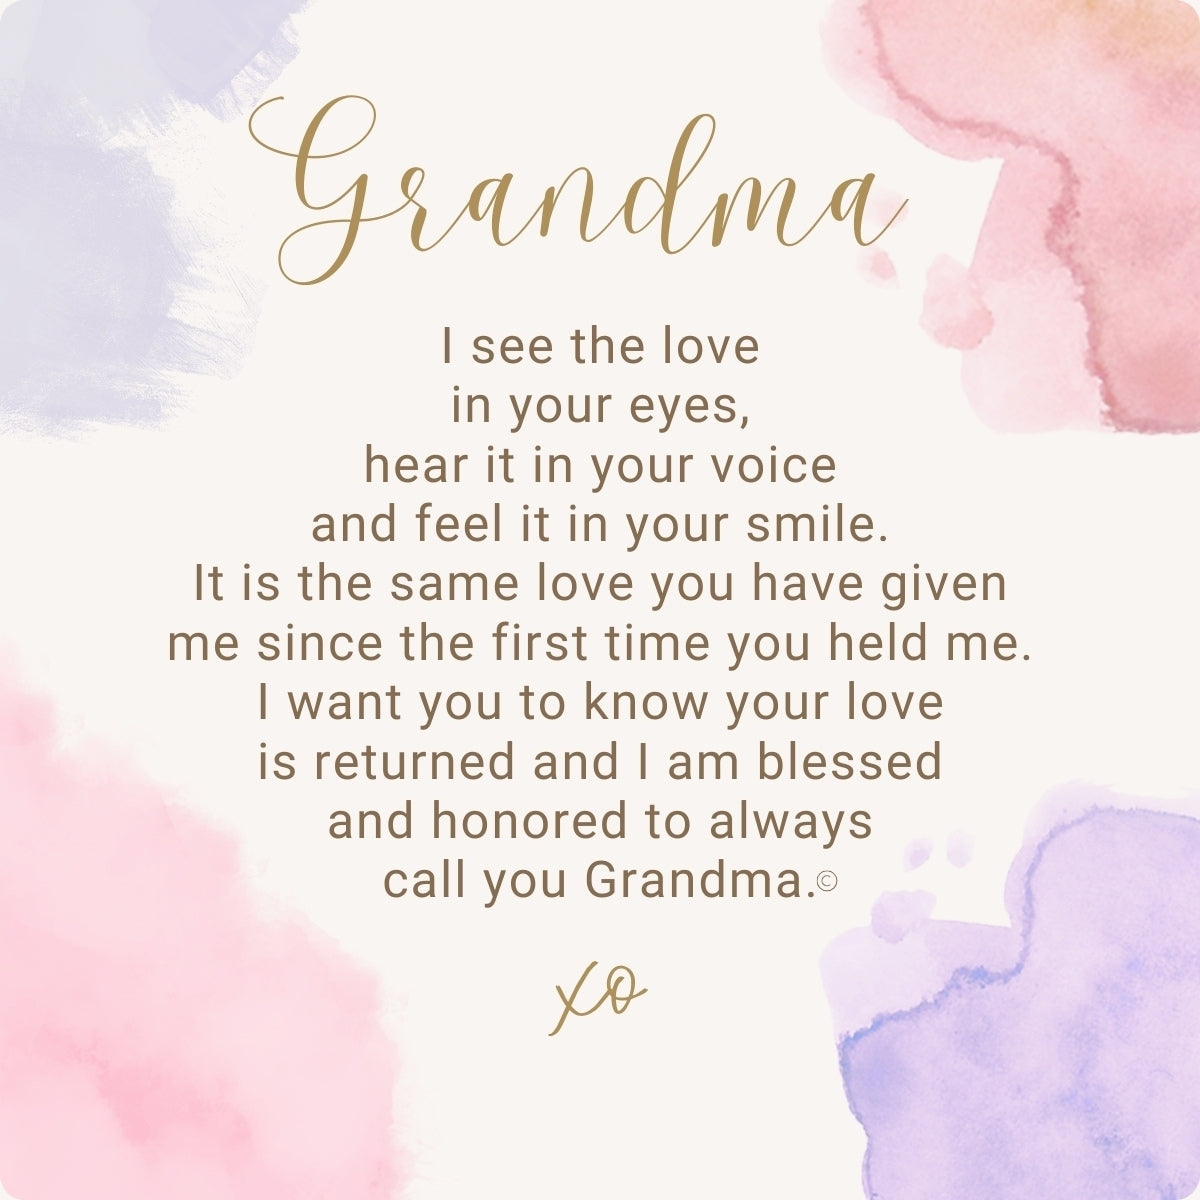 Her Heart for Grandma sentiment.